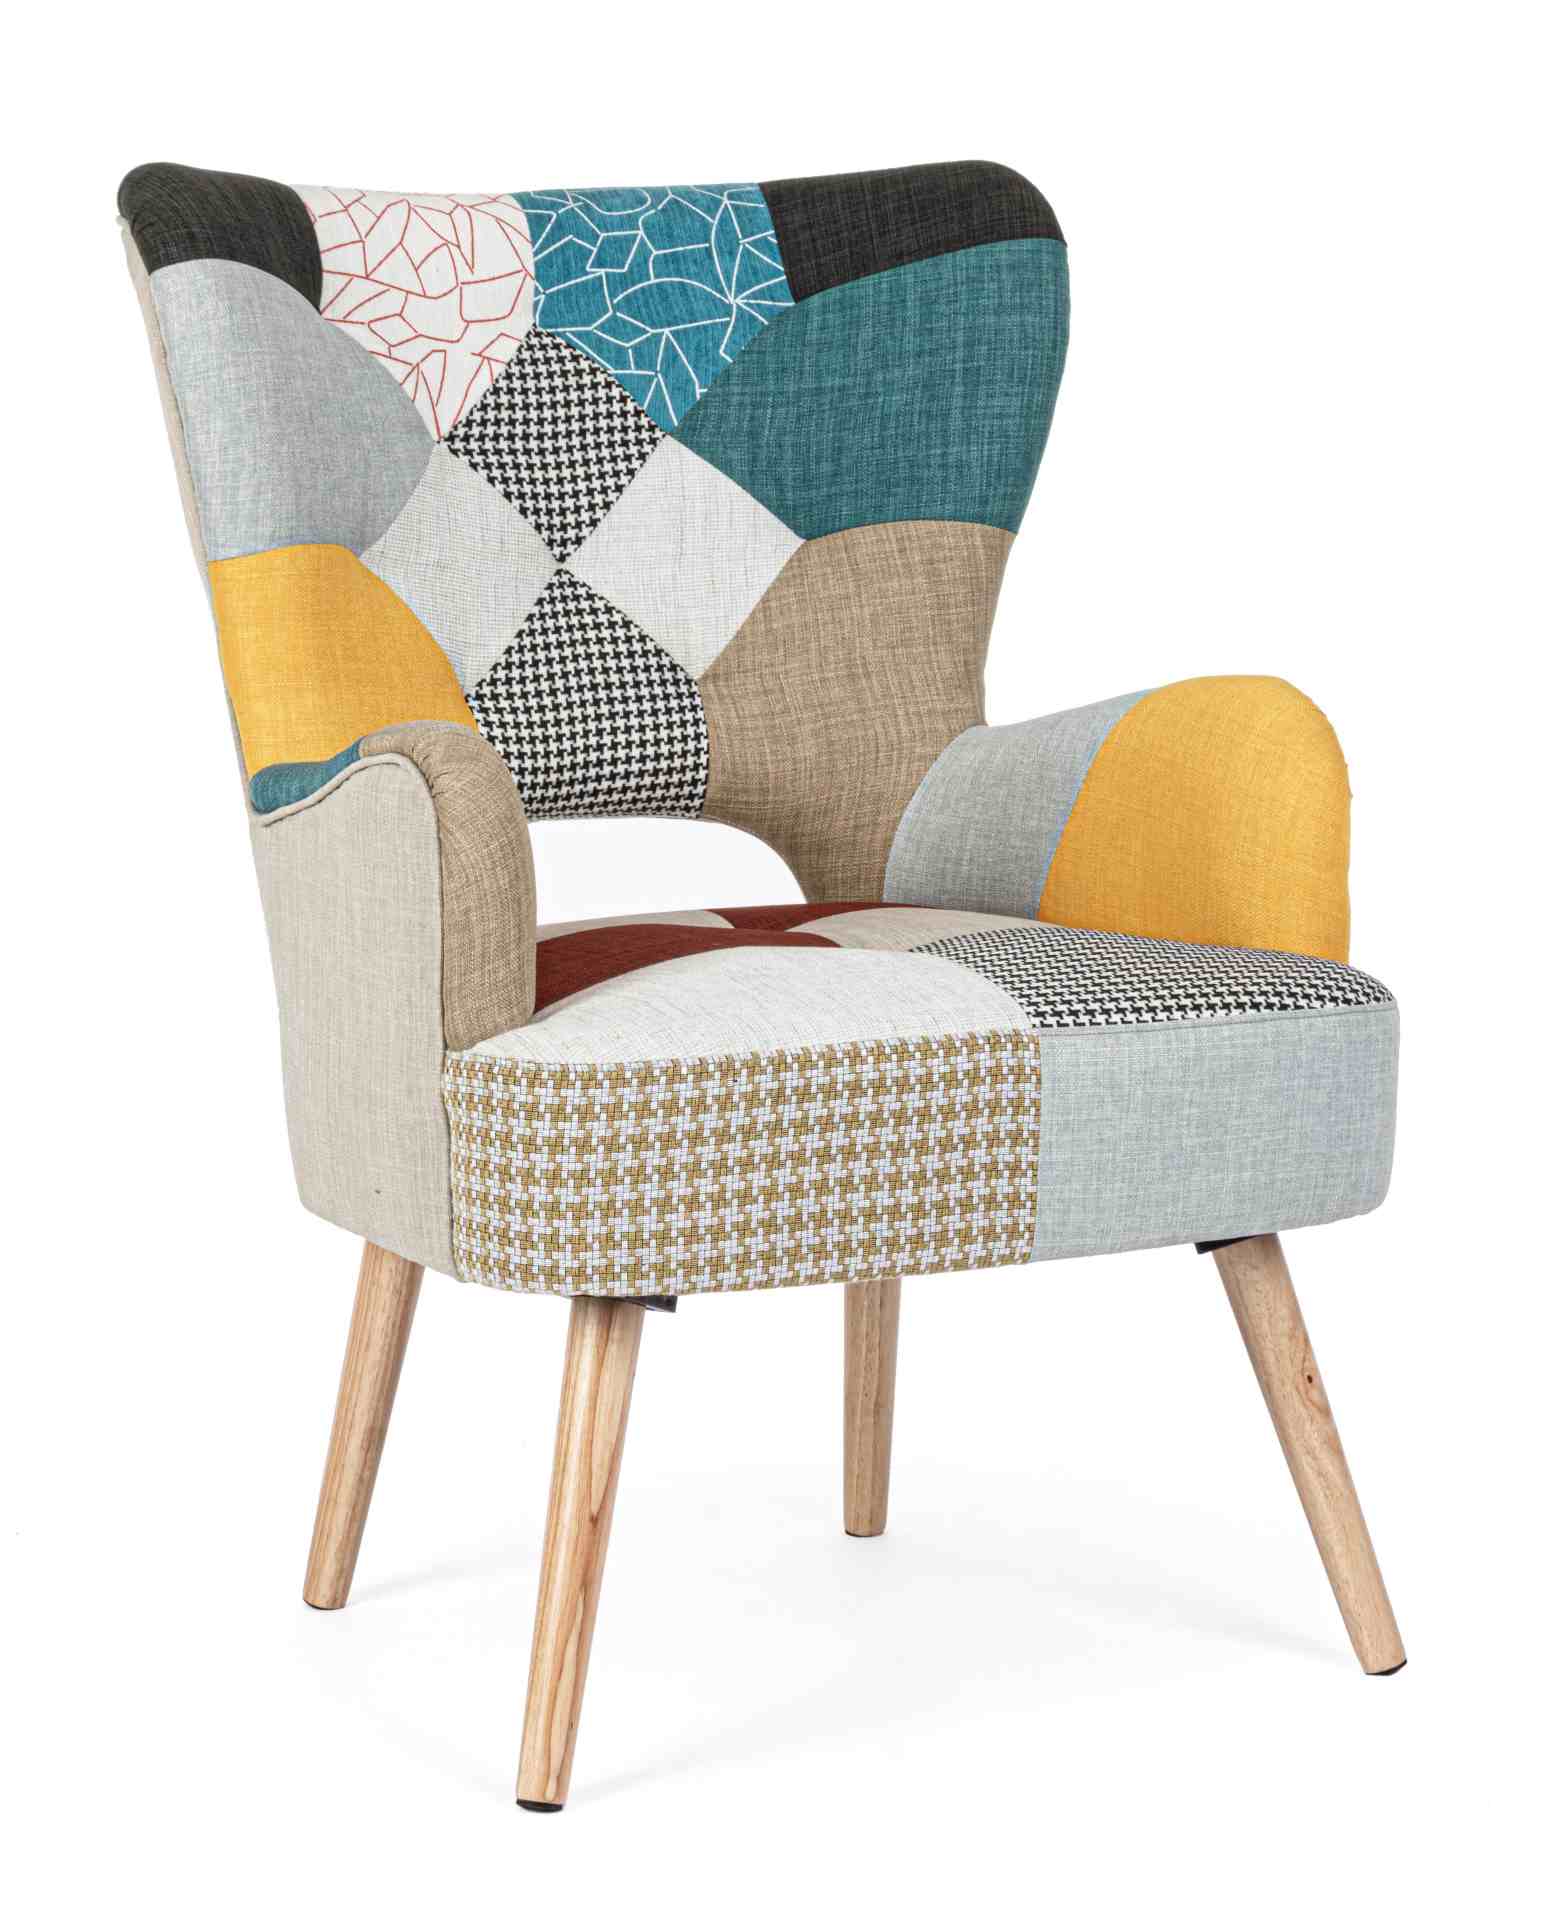 Der Sessel Galatea überzeugt mit seinem klassischen Design. Gefertigt wurde er aus Stoff, welcher einen mehrfarbigen Farbton besitzt. Das Gestell ist aus Kautschukholz und hat eine natürliche Farbe. Der Sessel besitzt eine Sitzhöhe von 45 cm. Die Breite b